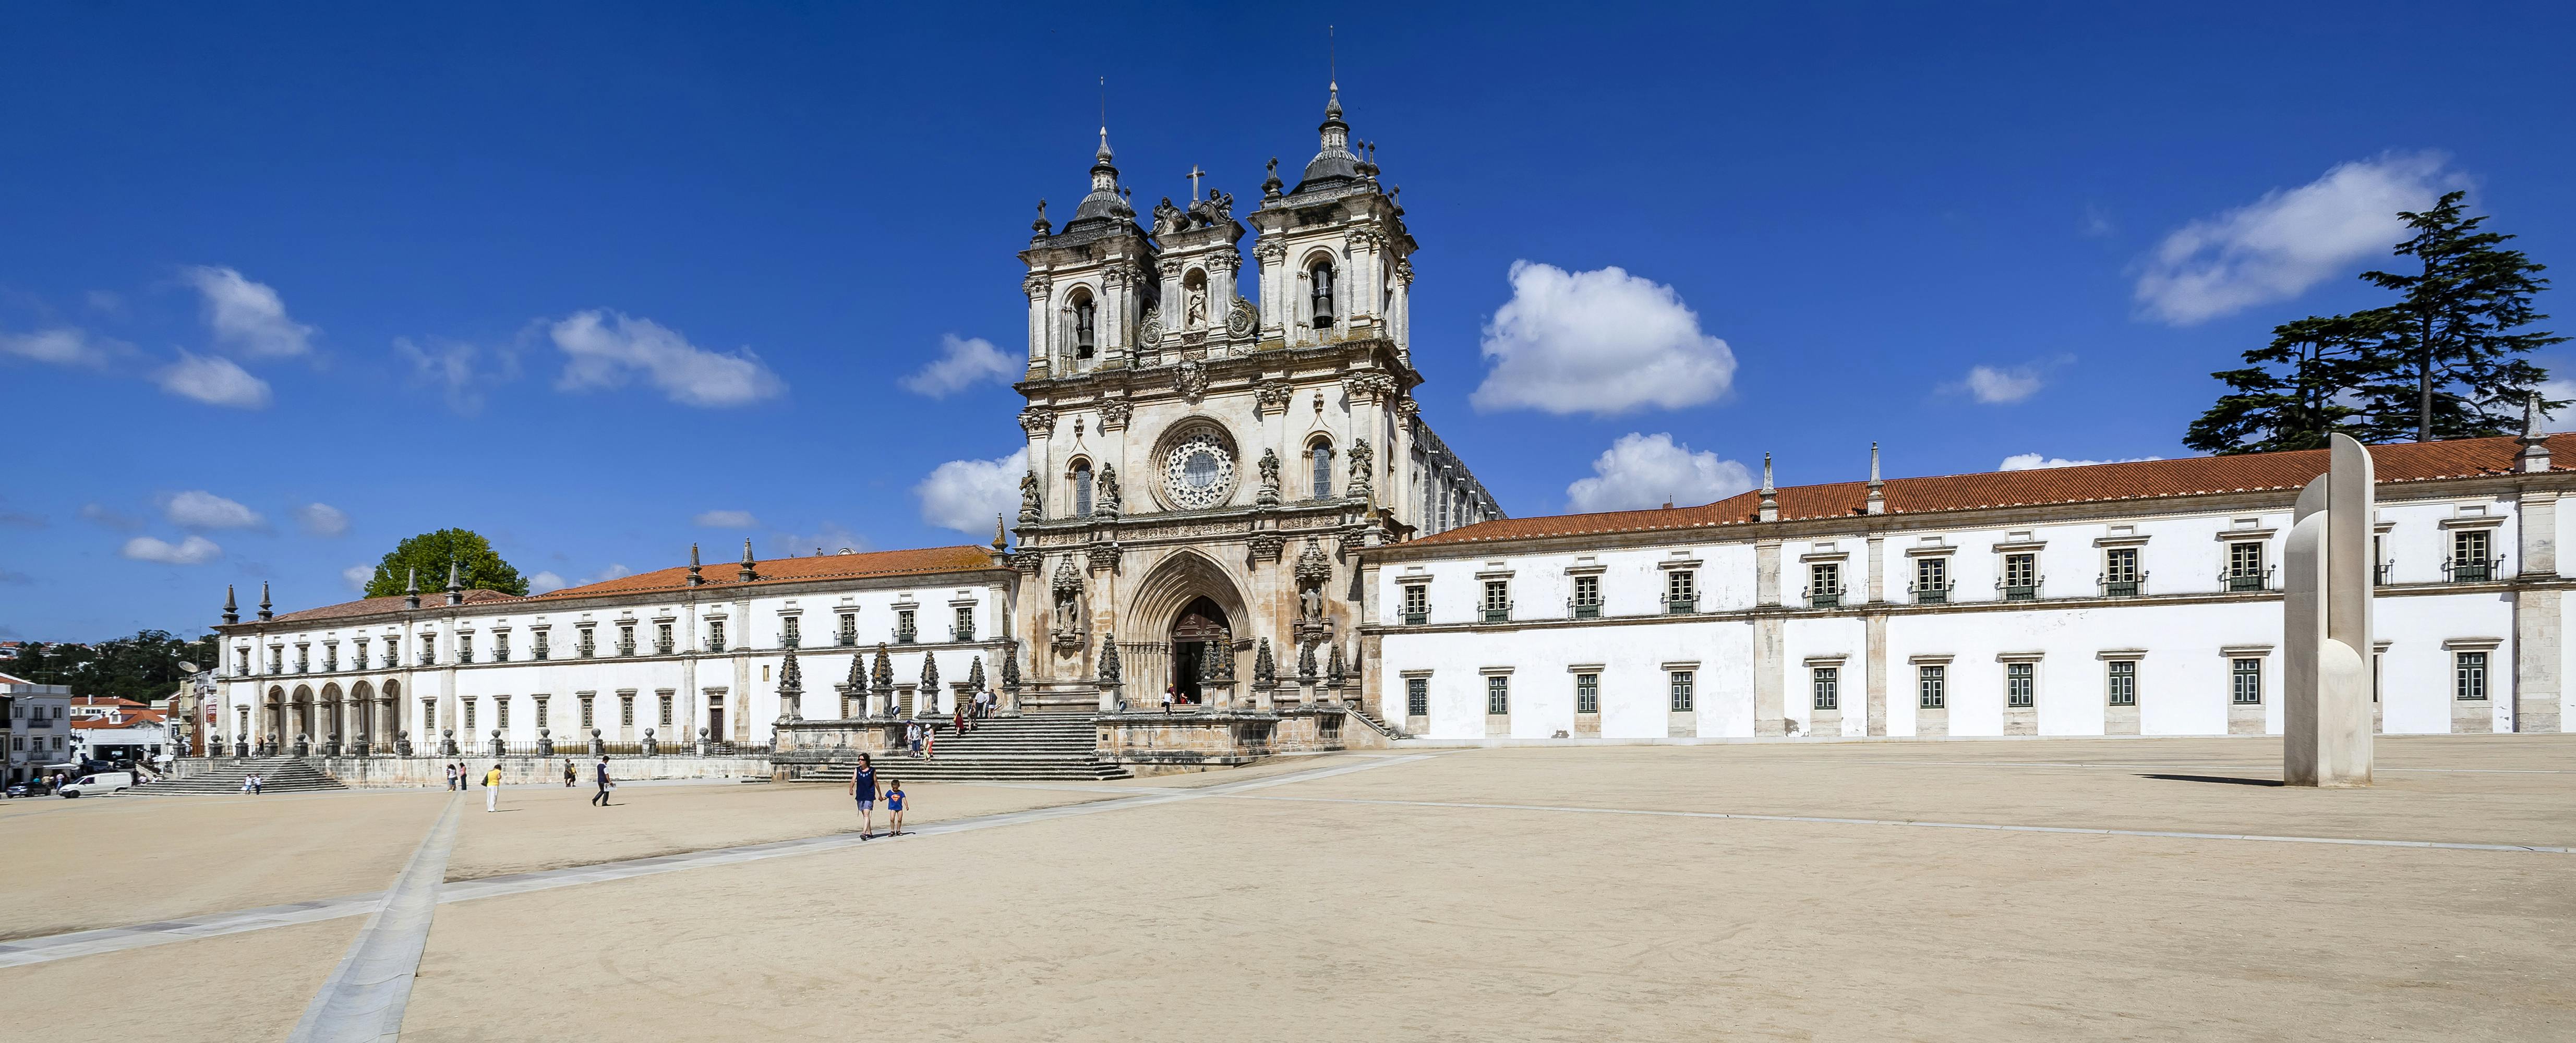 Excursão privada a Fátima, Batalha, Alcobaça, Nazaré e Óbidos saindo de Lisboa